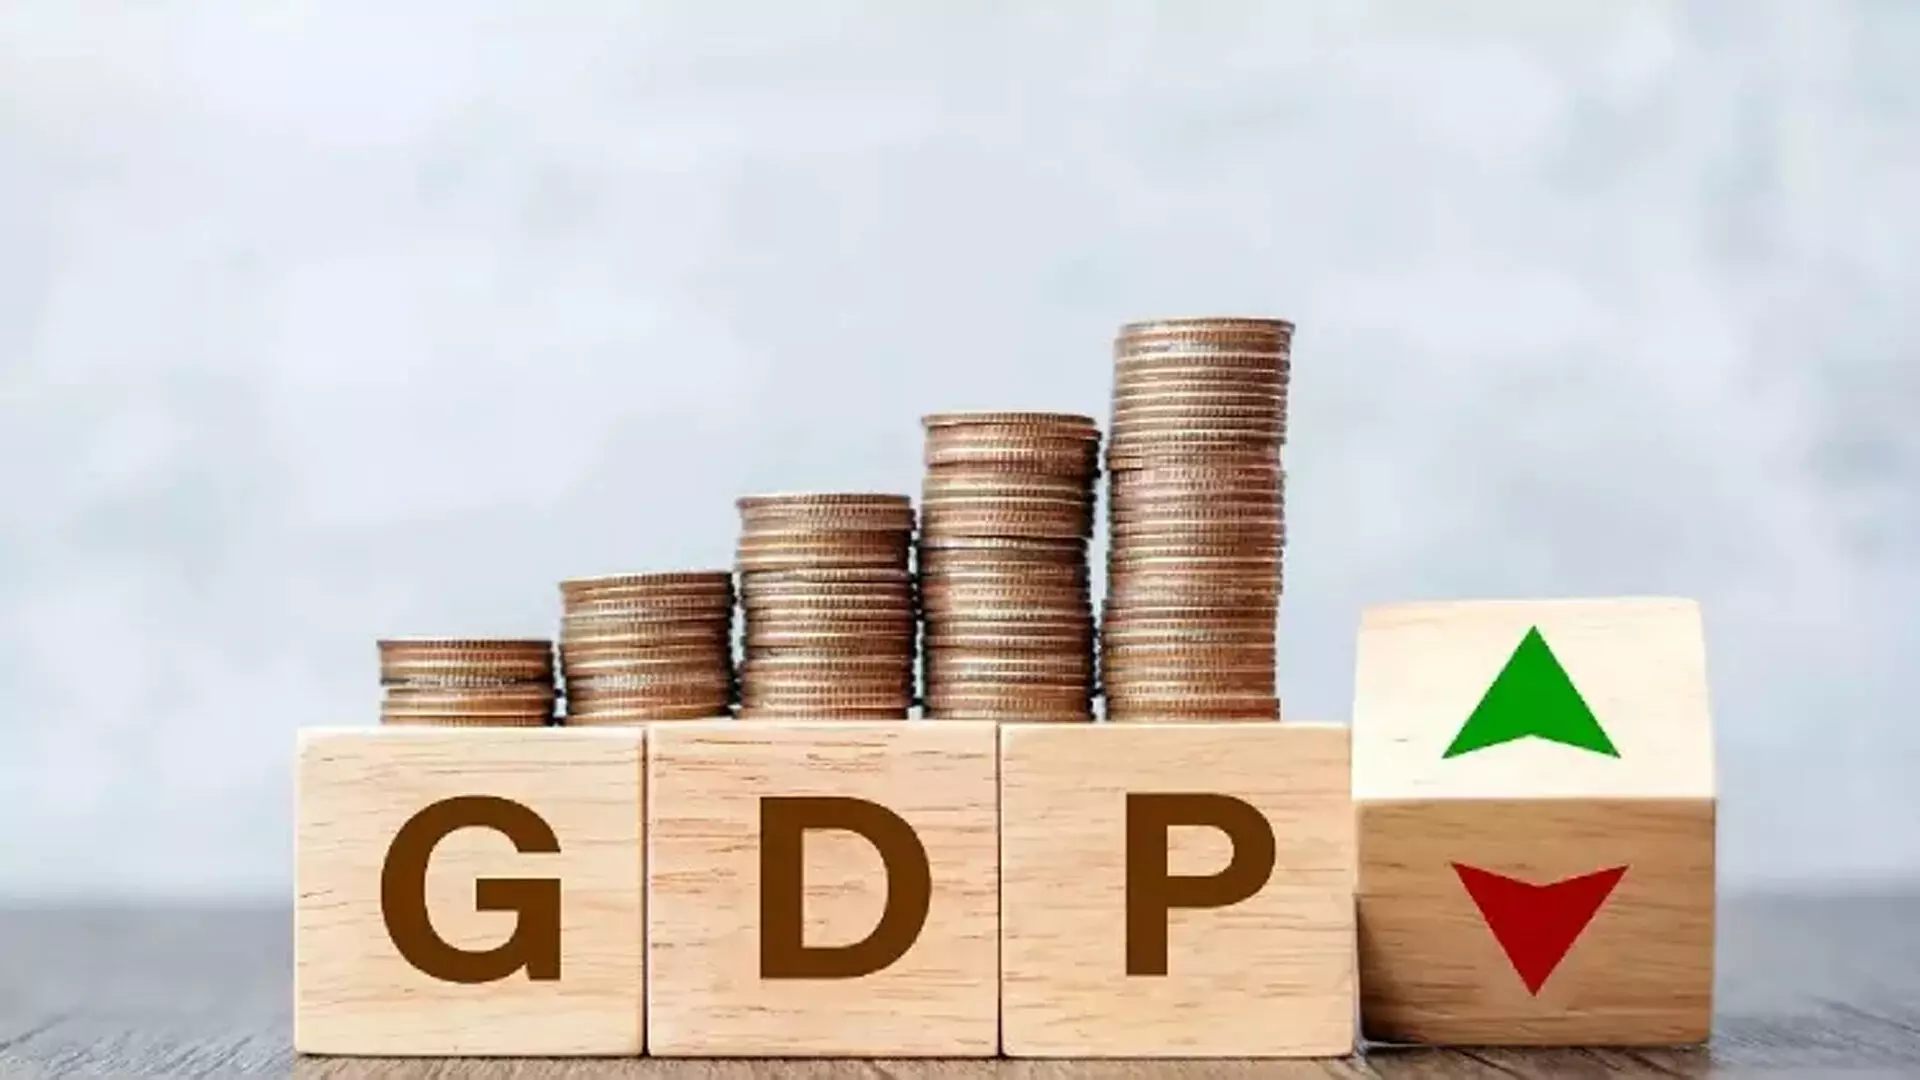 Ind-Ra ने वित्त वर्ष 25 के लिए GDP वृद्धि का अनुमान बढ़ाकर 7.5 प्रतिशत किया